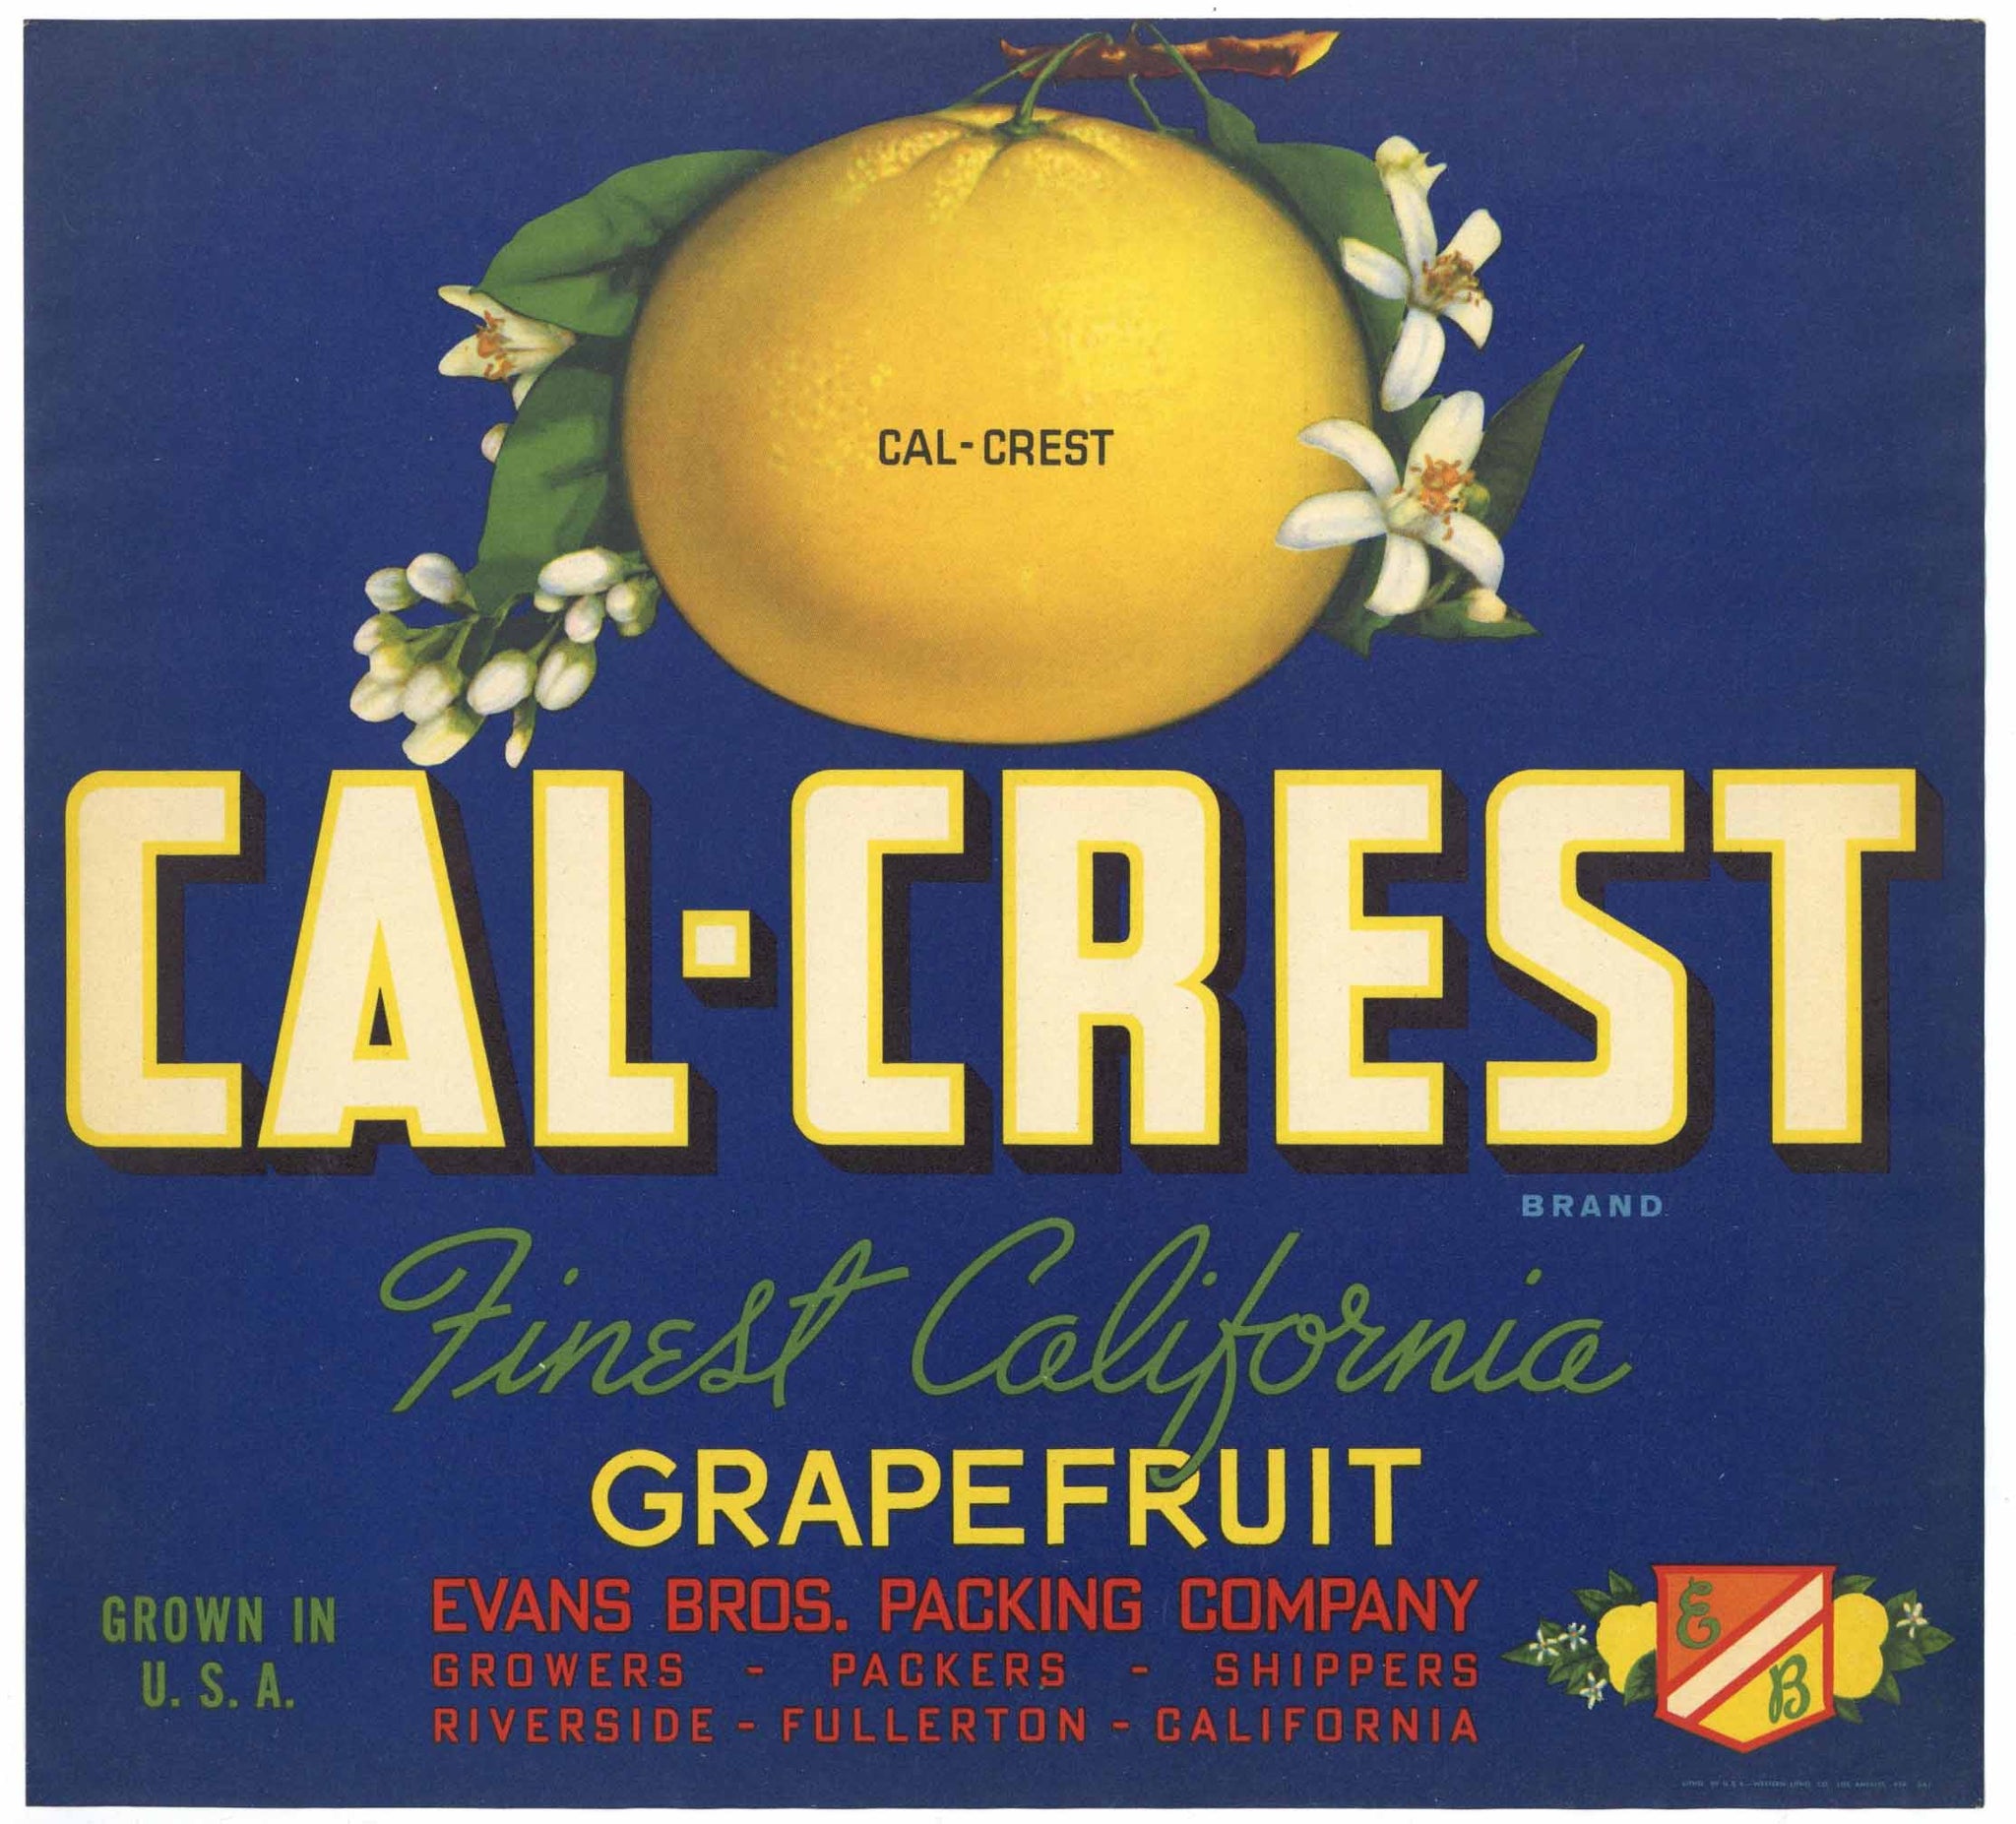 Cal-Crest Brand Vintage Grapefruit Crate Label